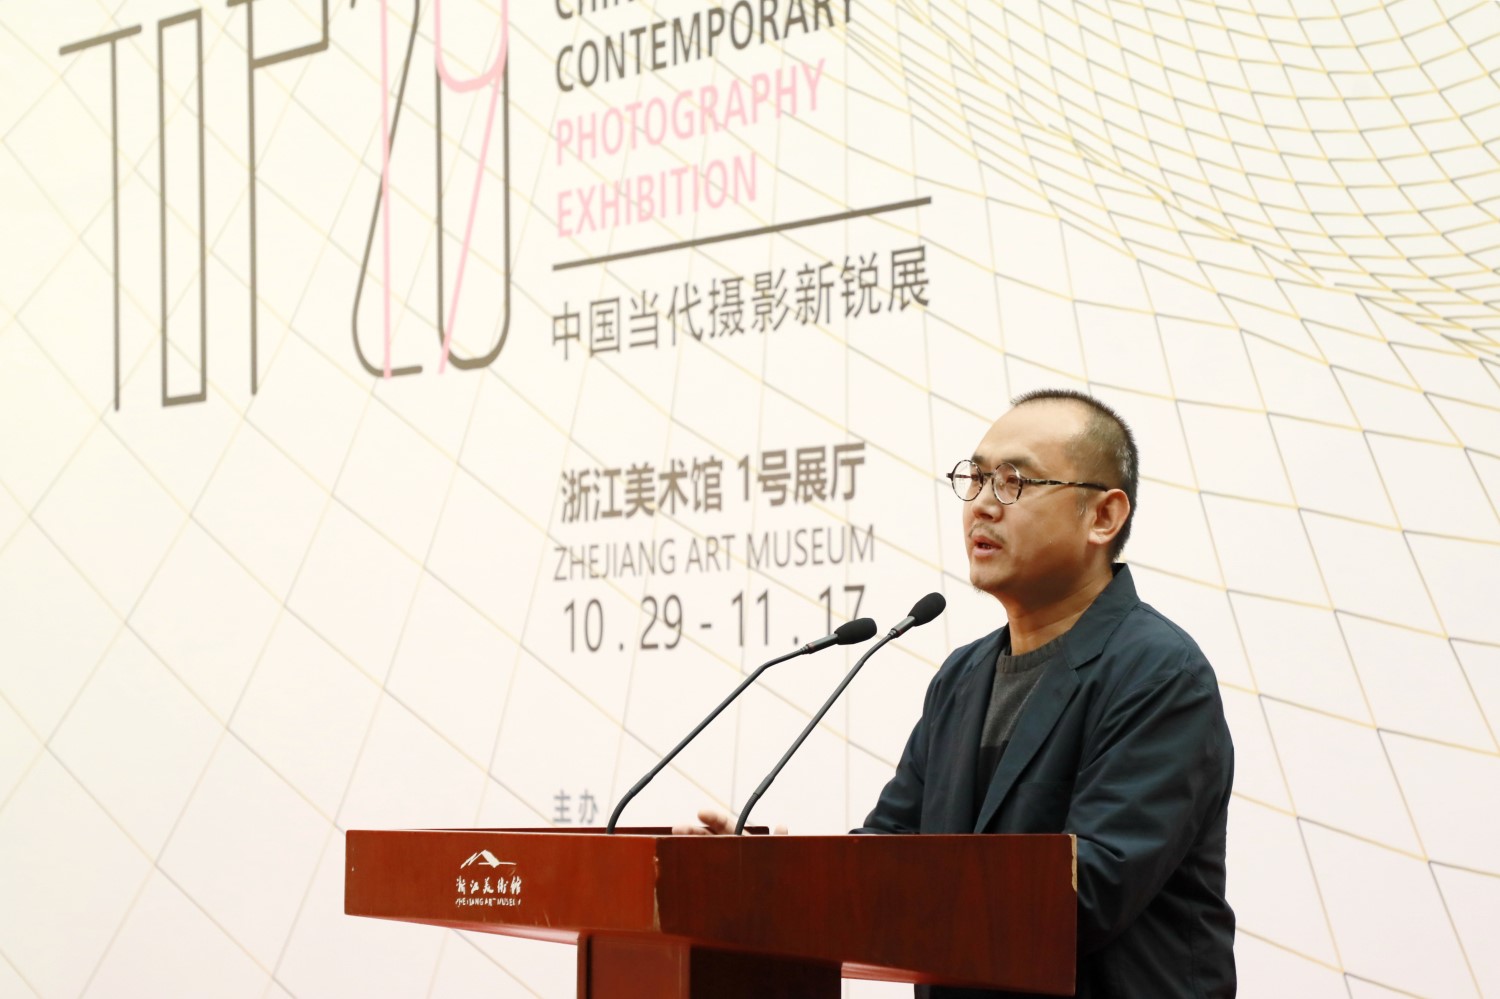 中国美术学院跨媒体学院实验艺术系主任、空间影像研究所所长高世强在开幕式发言  刘世斌摄.jpg